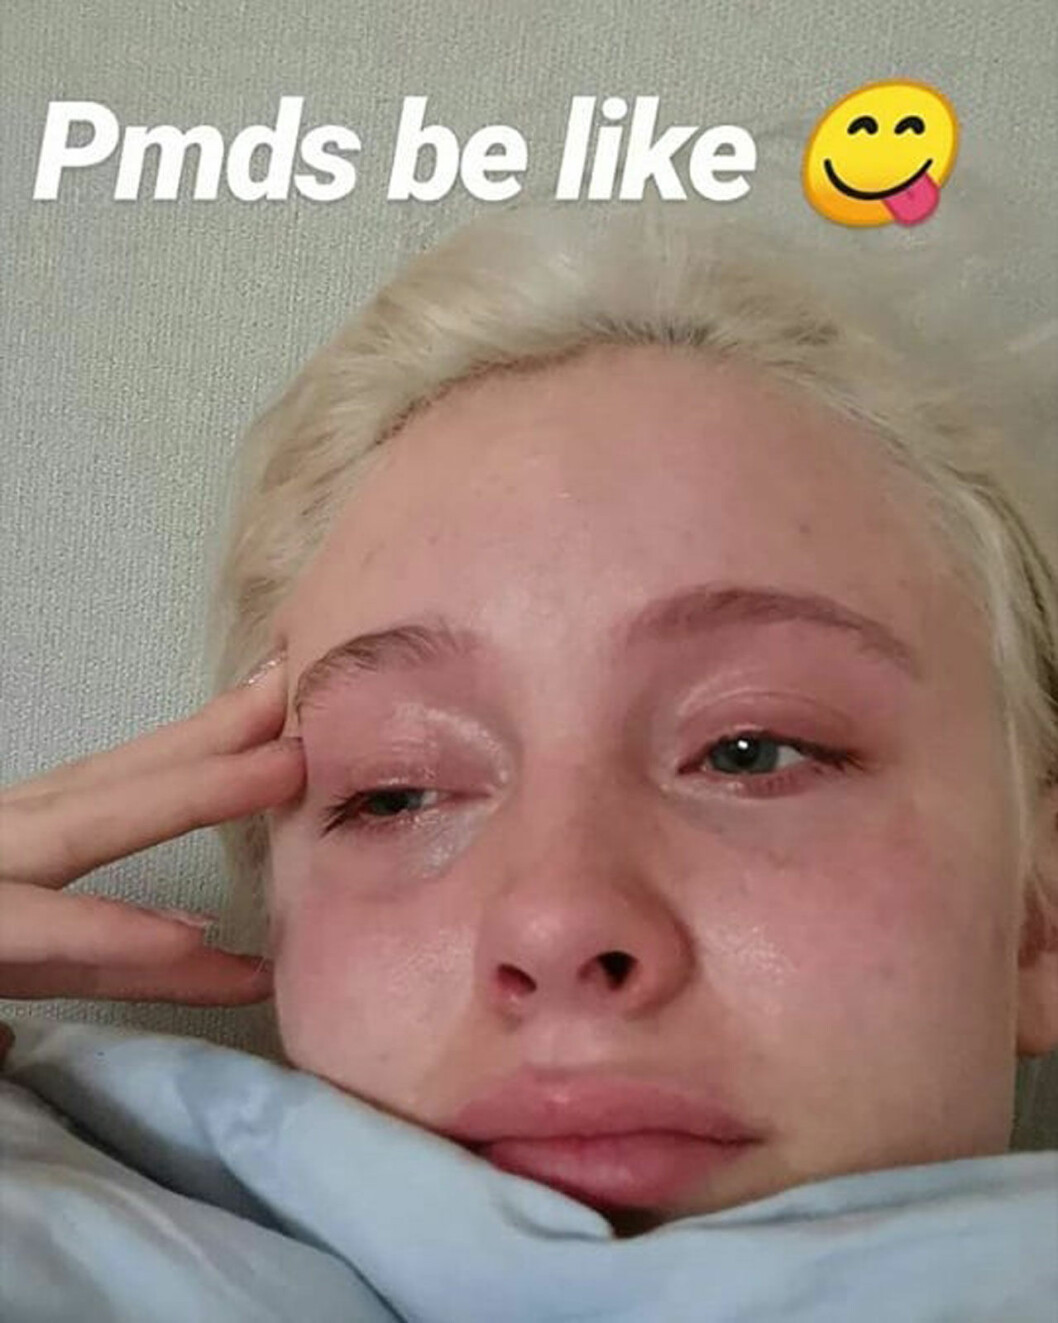 Zara Larsson om PMDS